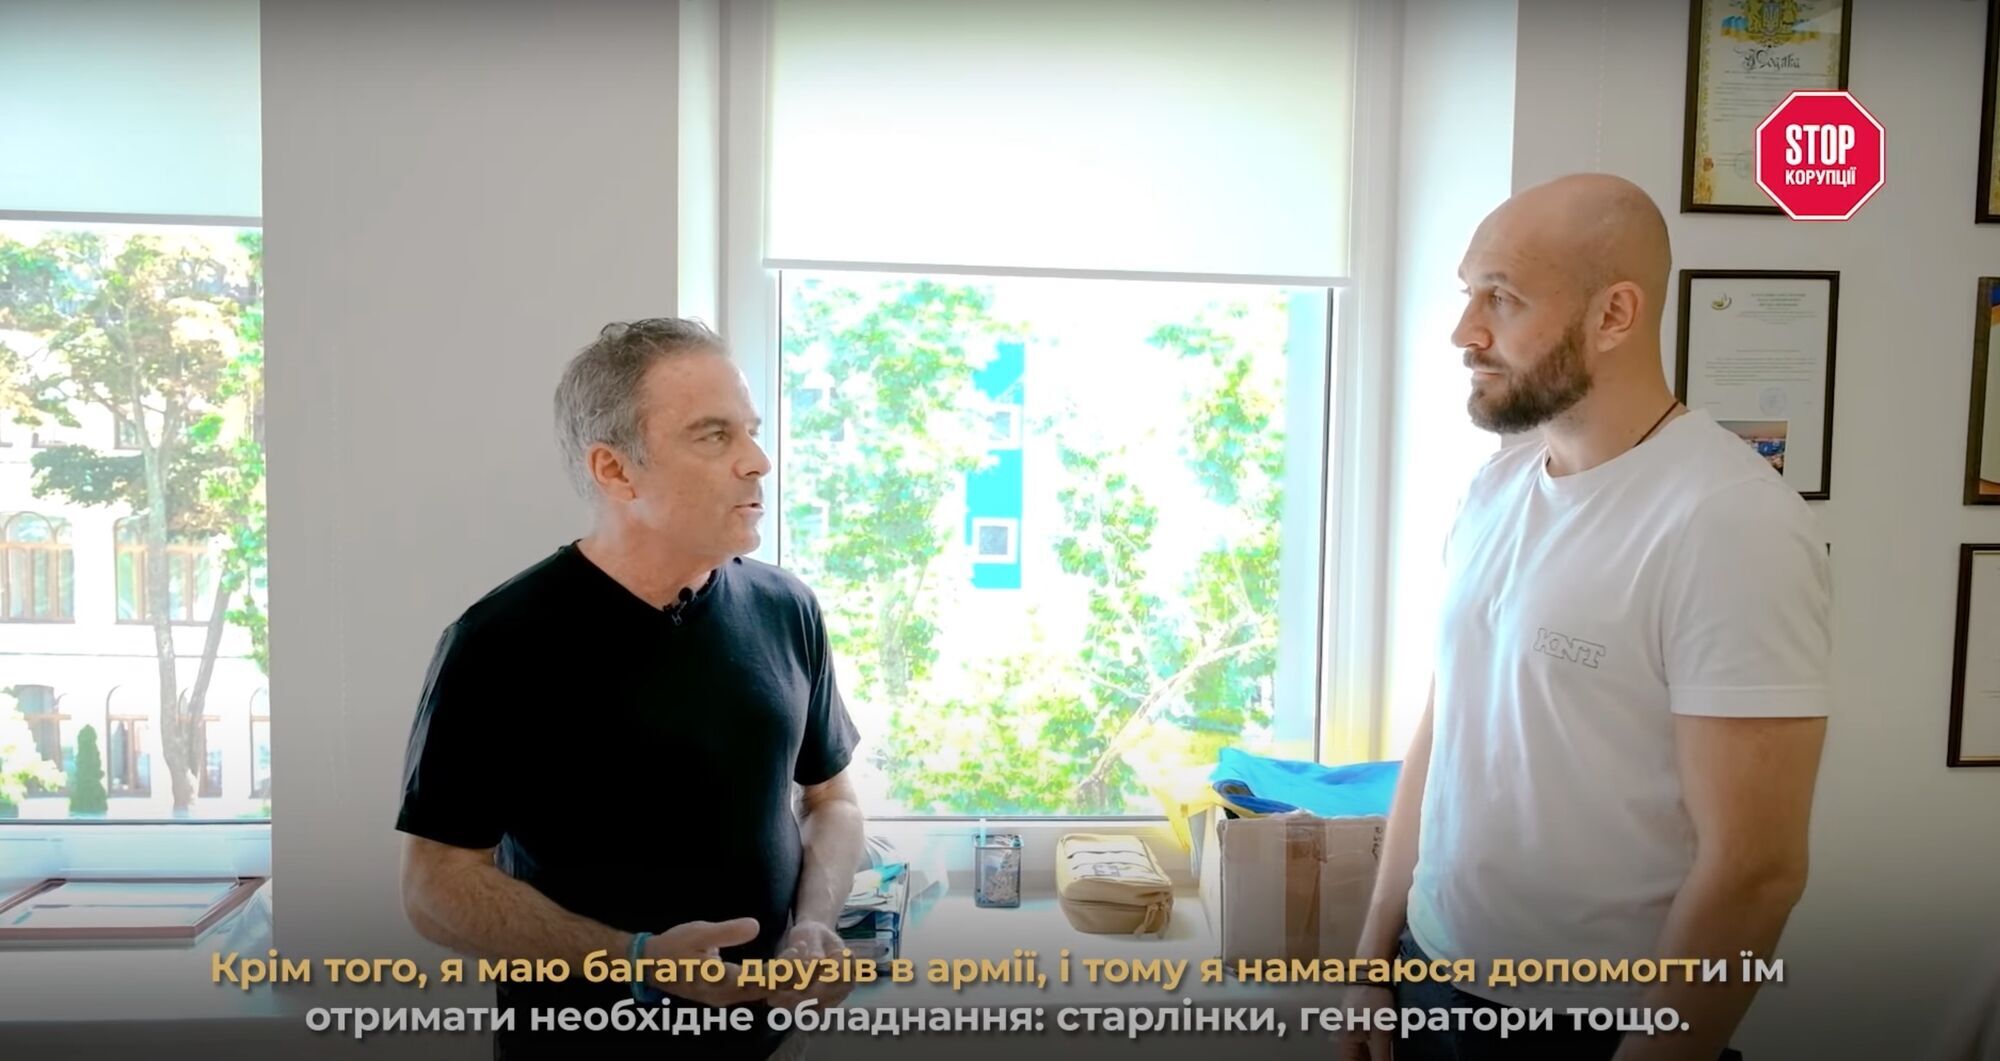 Стивен Мур пообщался с основателем ИА ''Стоп коррупции'' Романом Бочкалой